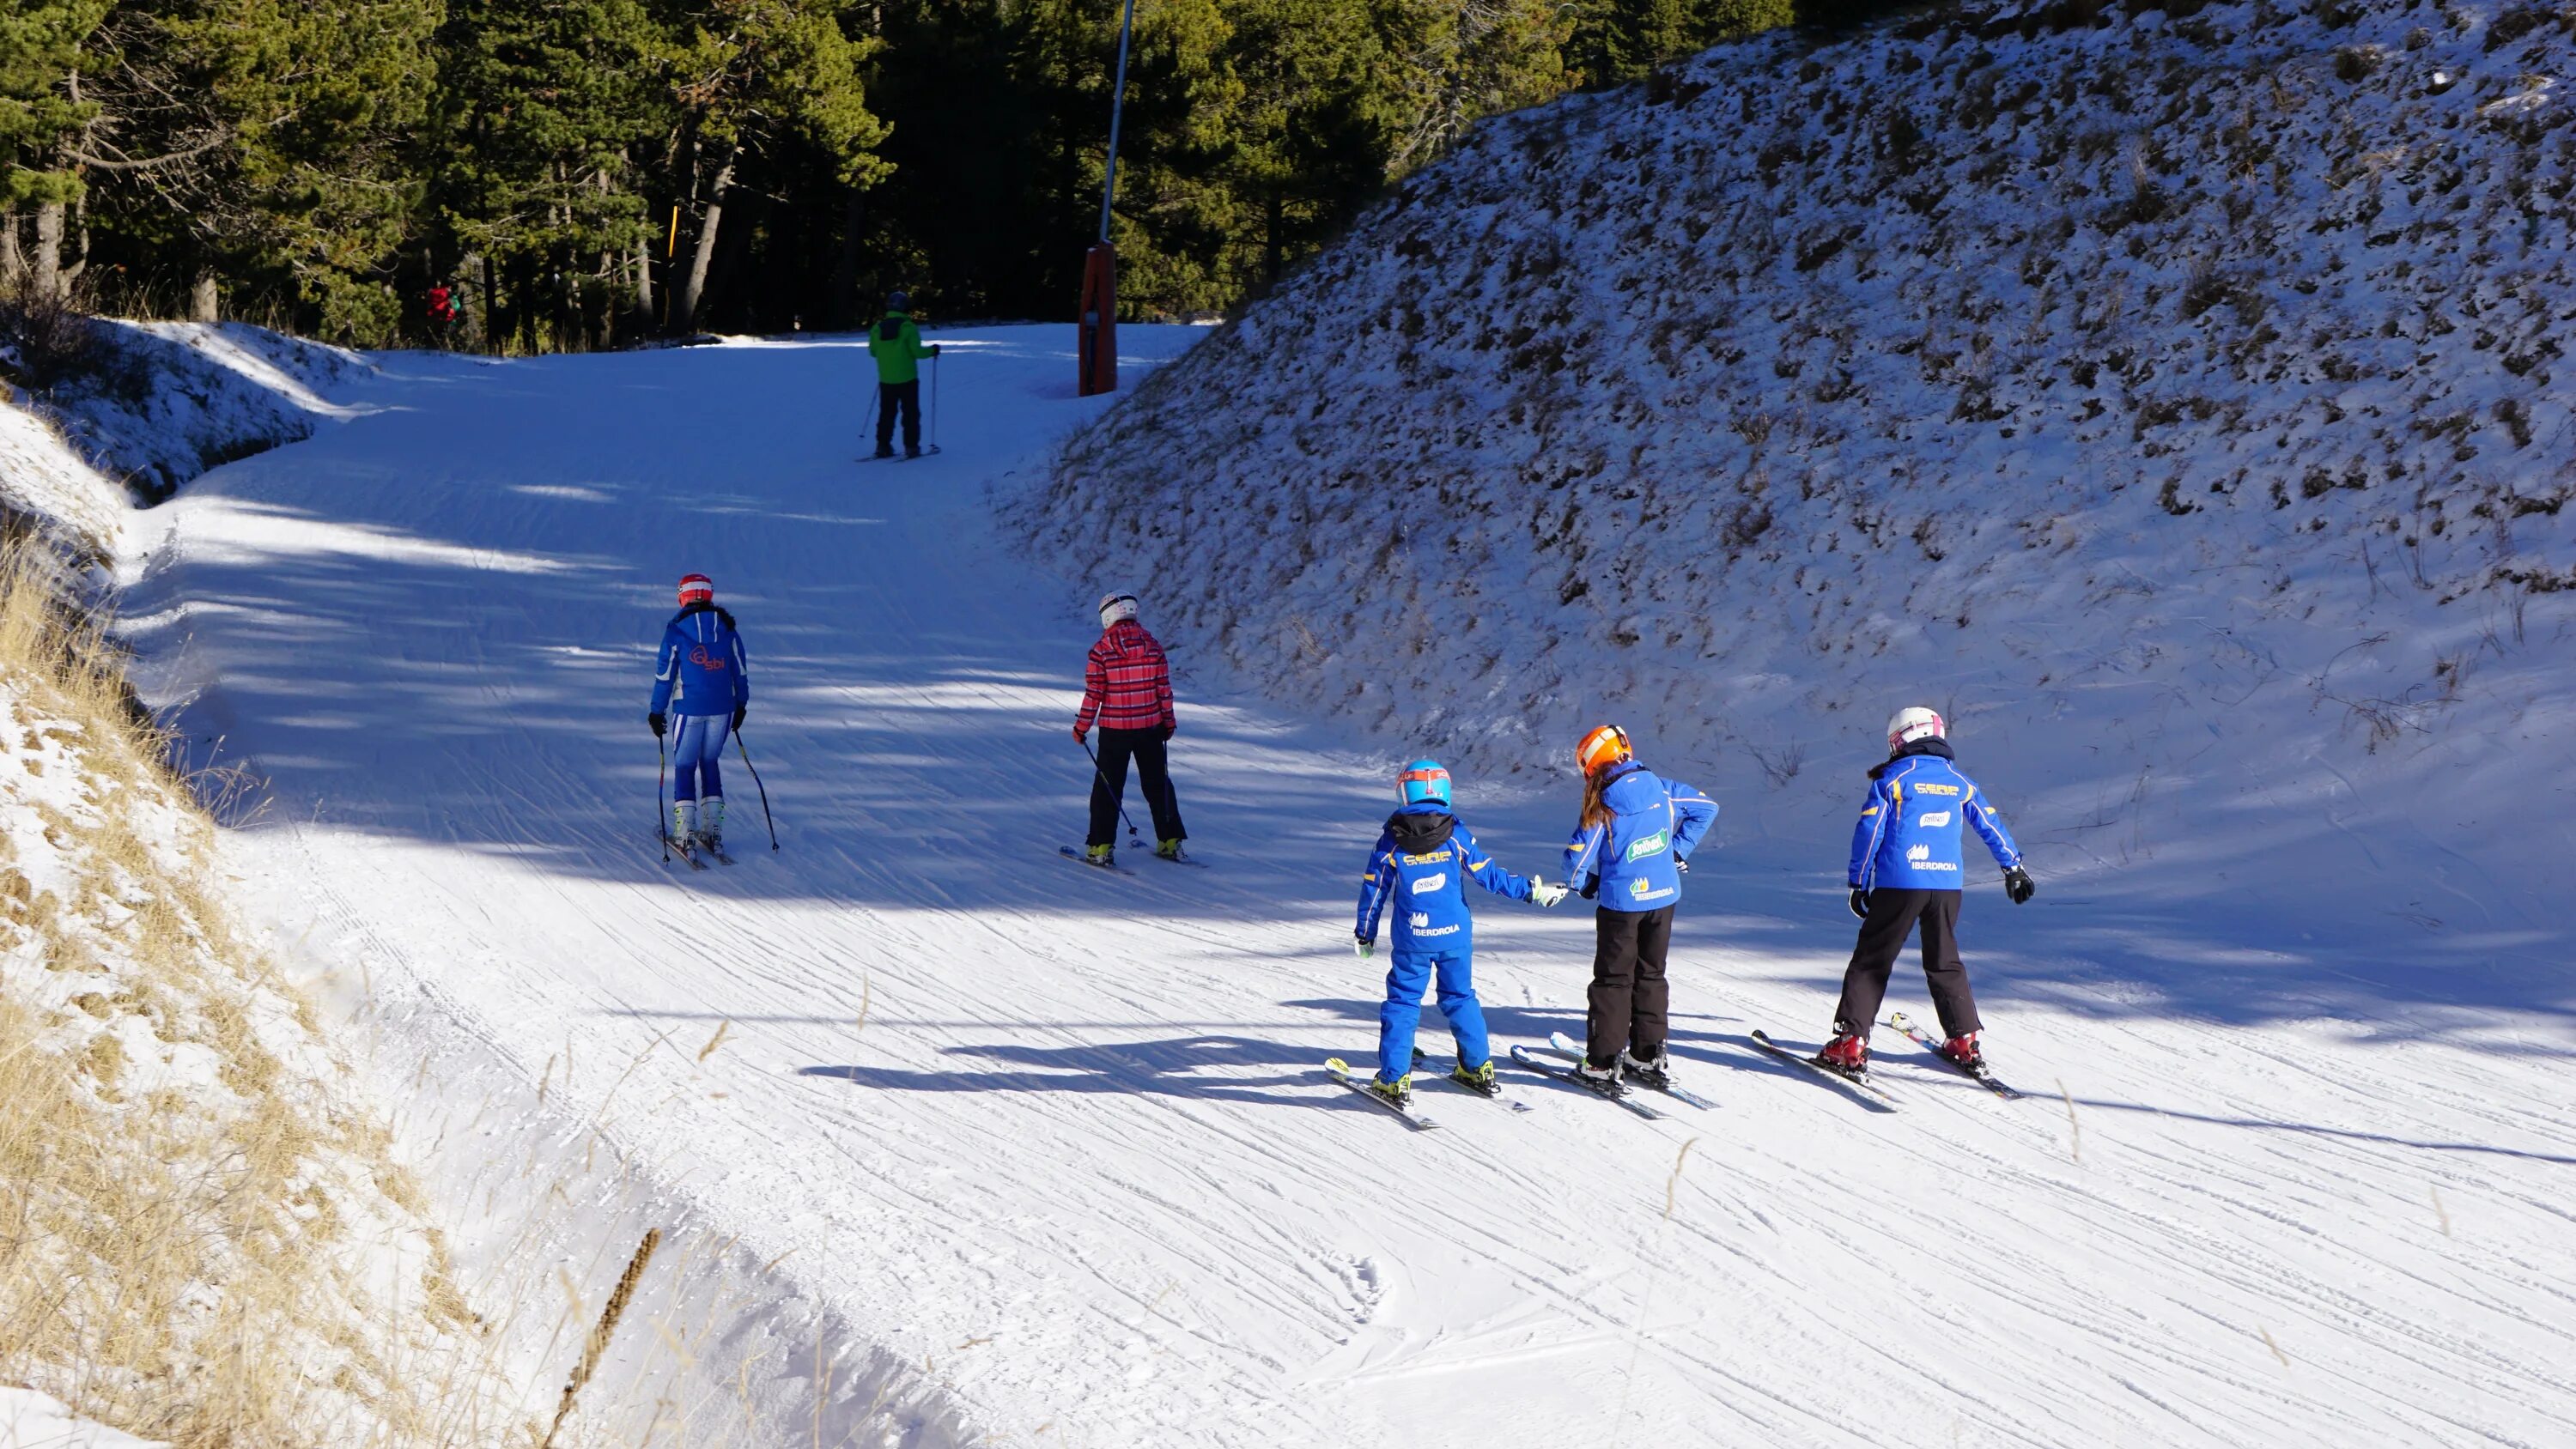 Лыжная трасса. Зимние покатушки на лыжах. Горнолыжный склон. Спуск на лыжах.